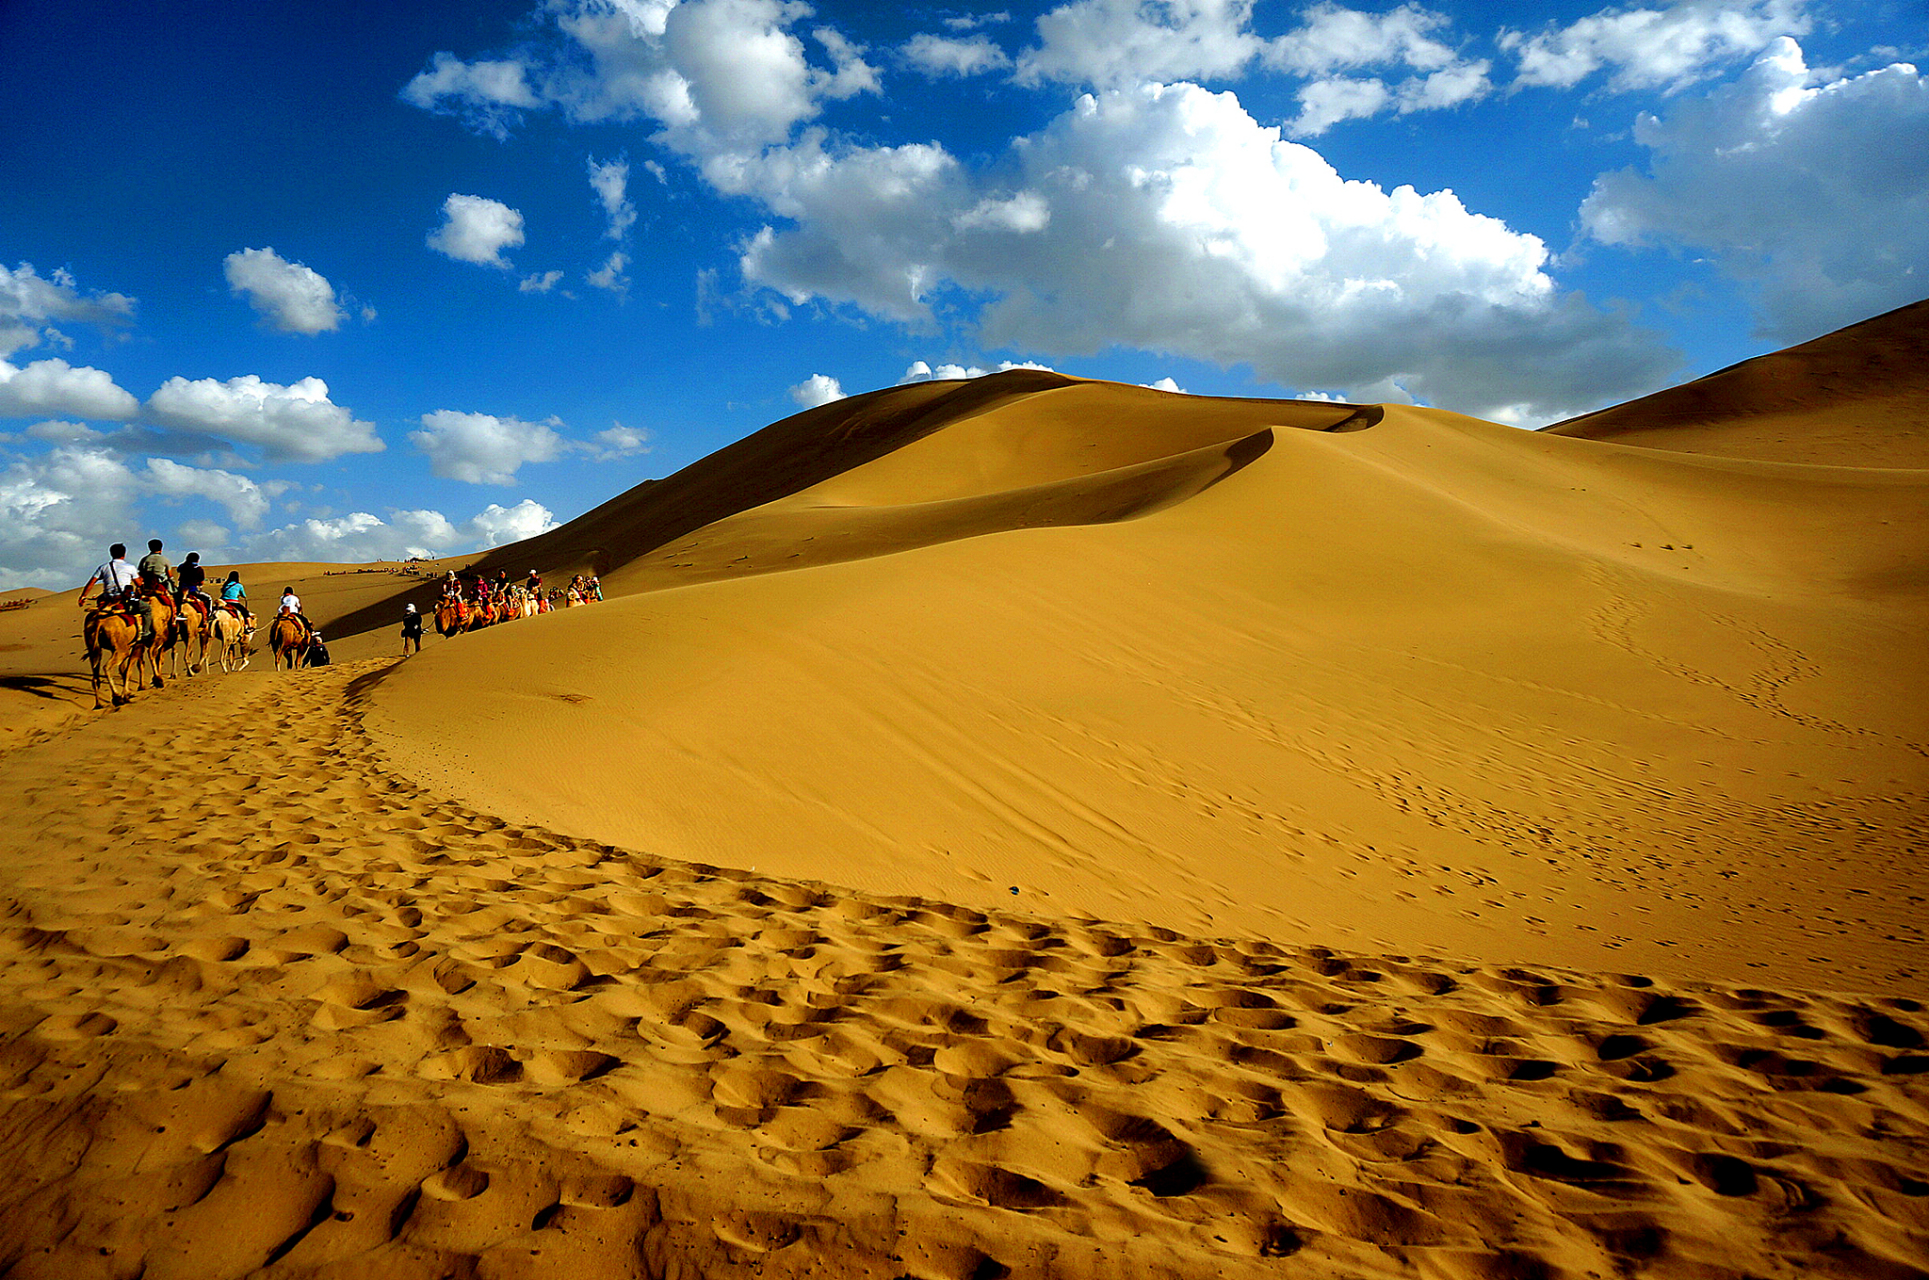 鸣沙山,位于西北地区,是中国最著名的沙漠景点之一